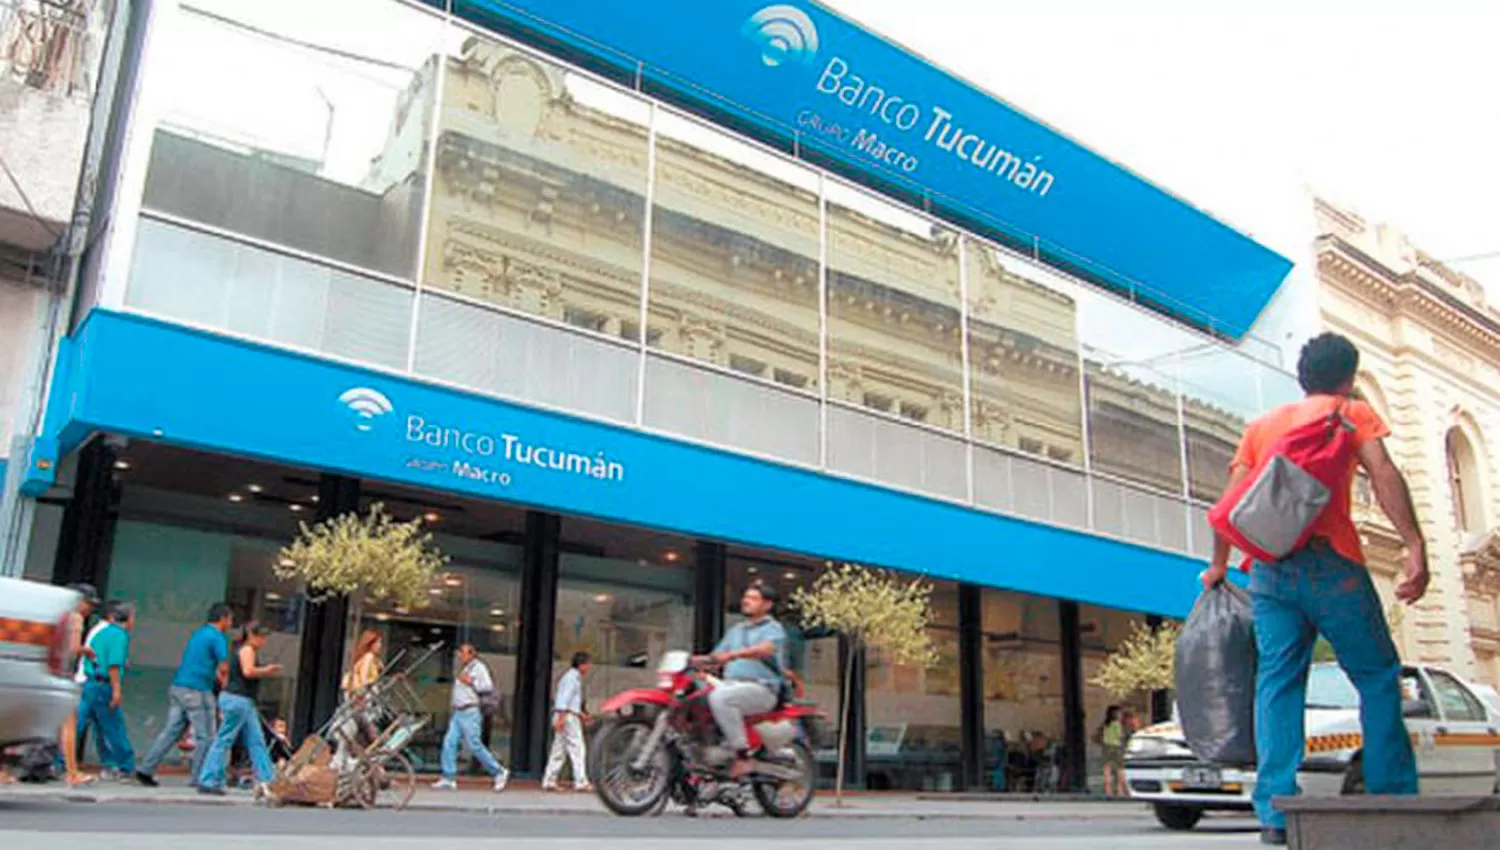 La cartelería será renovada para identificar la sede como Banco Macro.